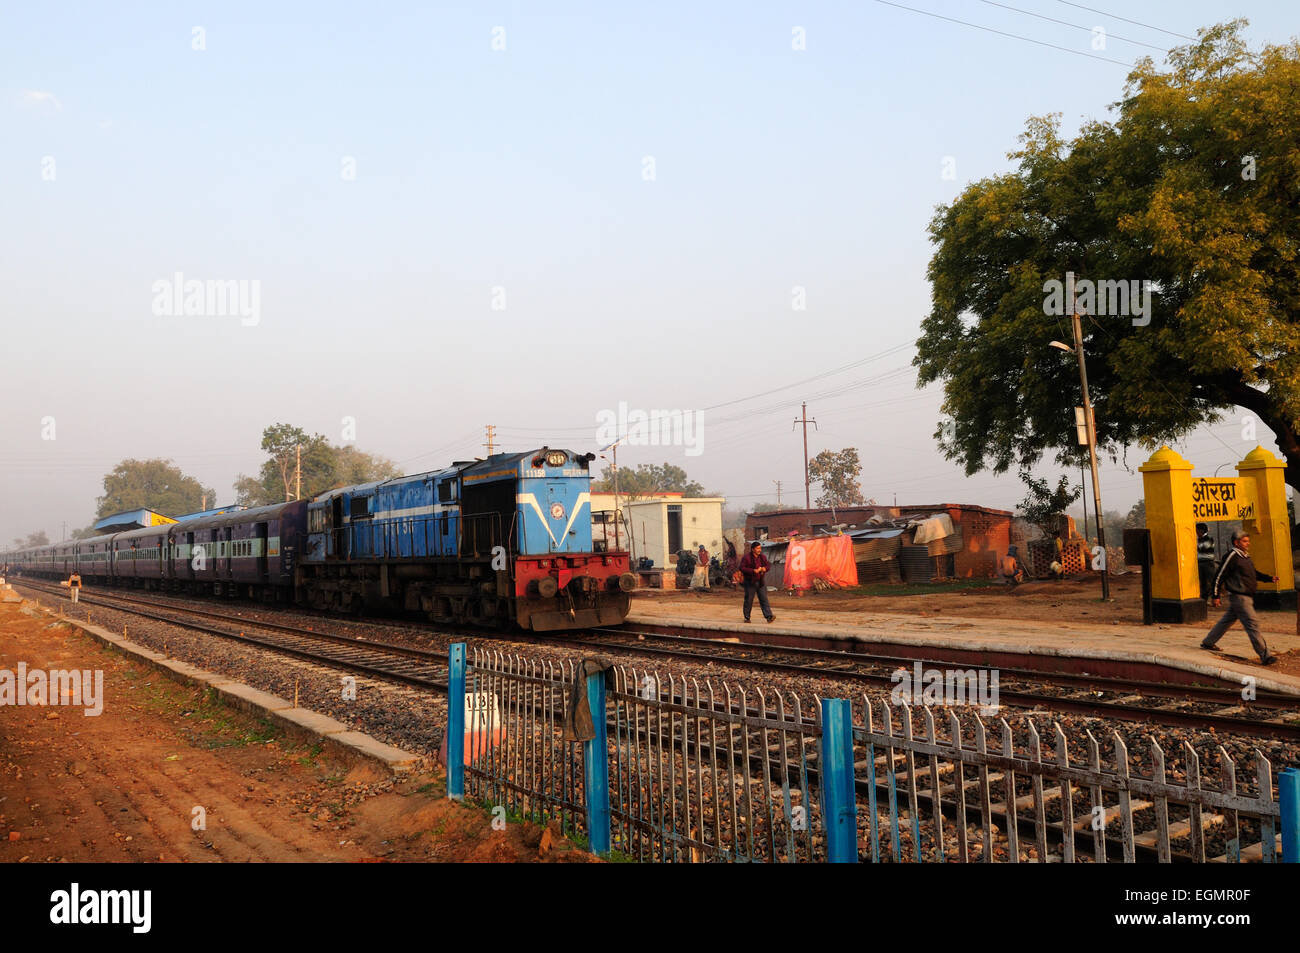 Indian train à la gare de Orchha Madhya Pradesh Inde Banque D'Images